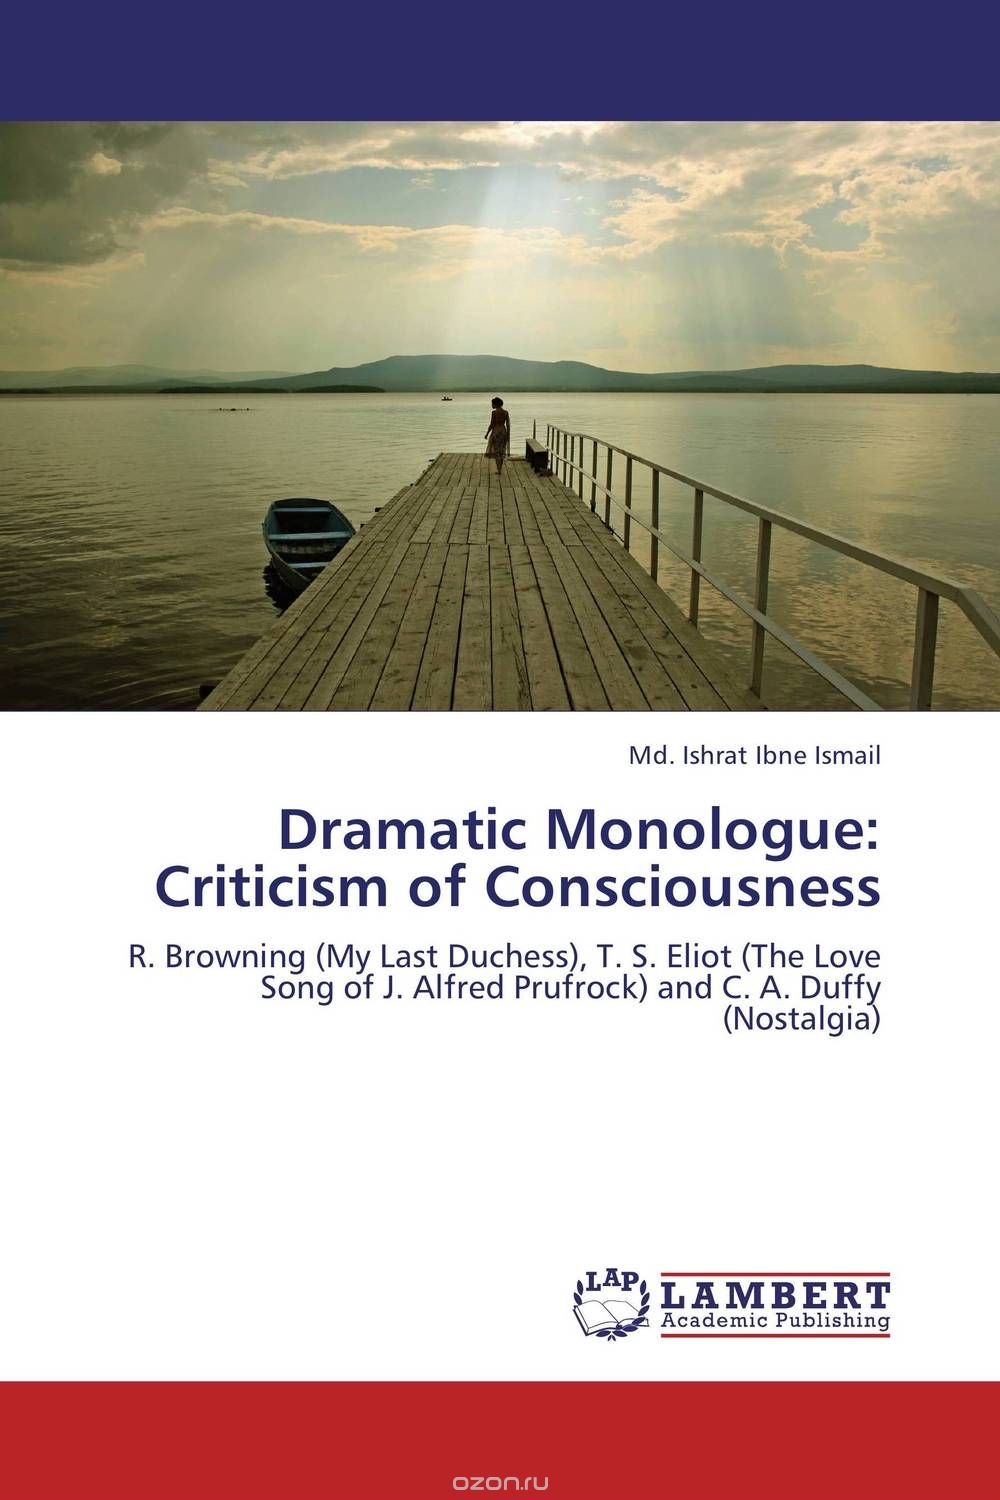 Скачать книгу "Dramatic Monologue: Criticism of Consciousness"